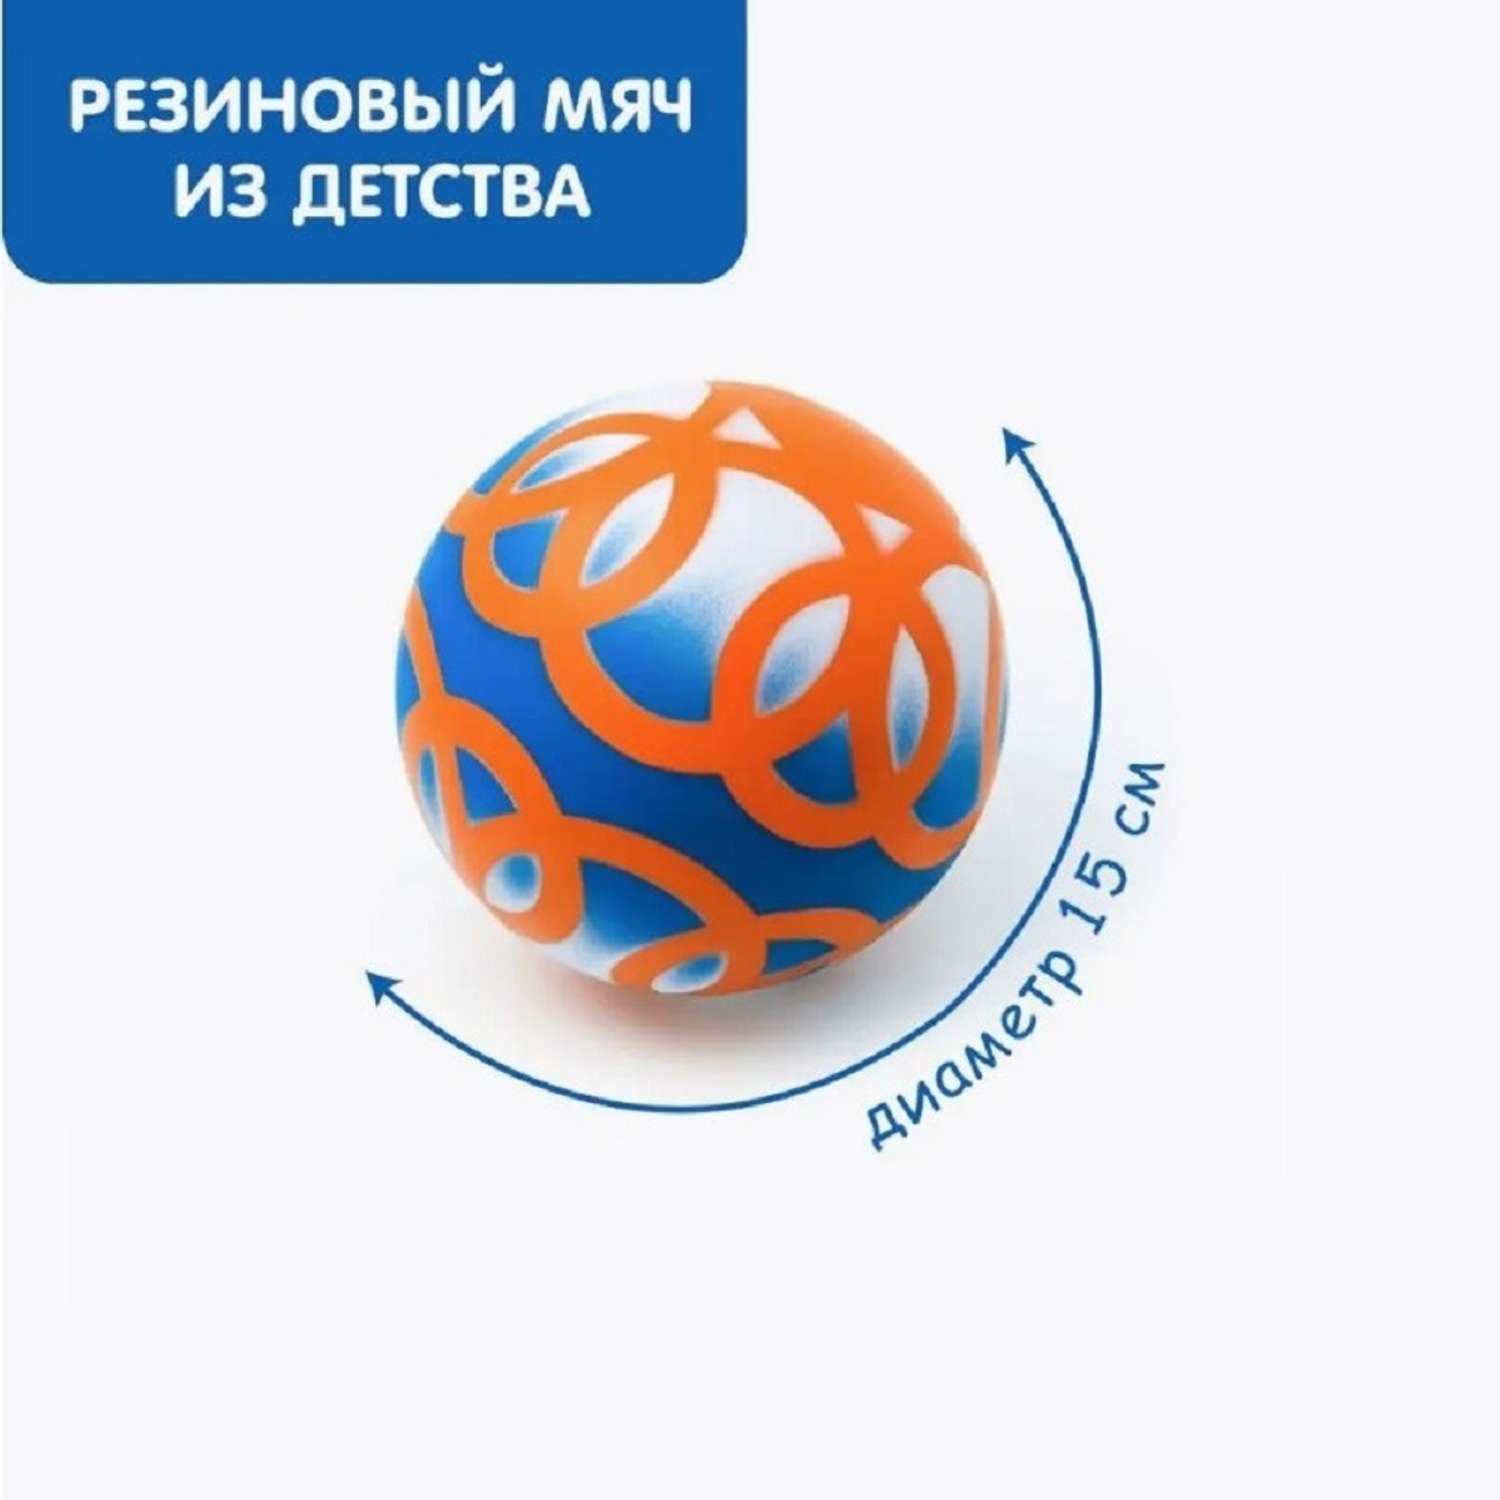 Мяч детский резиновый S+S для игры дома и на улице диаметр 15 см - фото 1